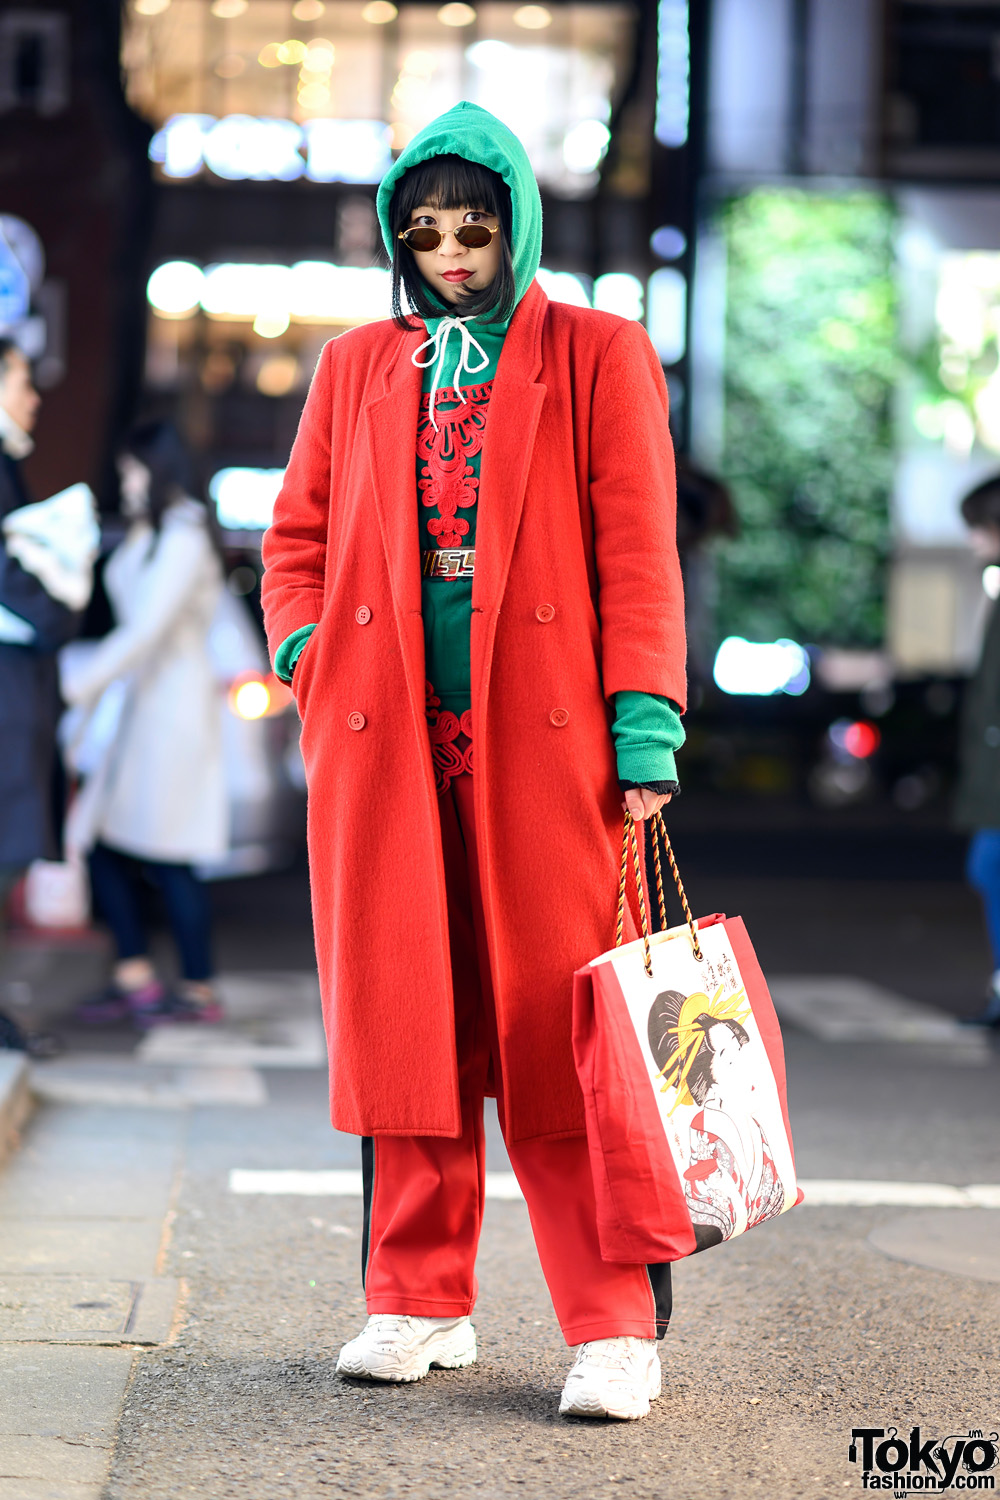 Colorful Tokyo Vintage Streetwear Style w/ Red Coat, Green Hoodie, Graphic Bag, Skechers & Kappa